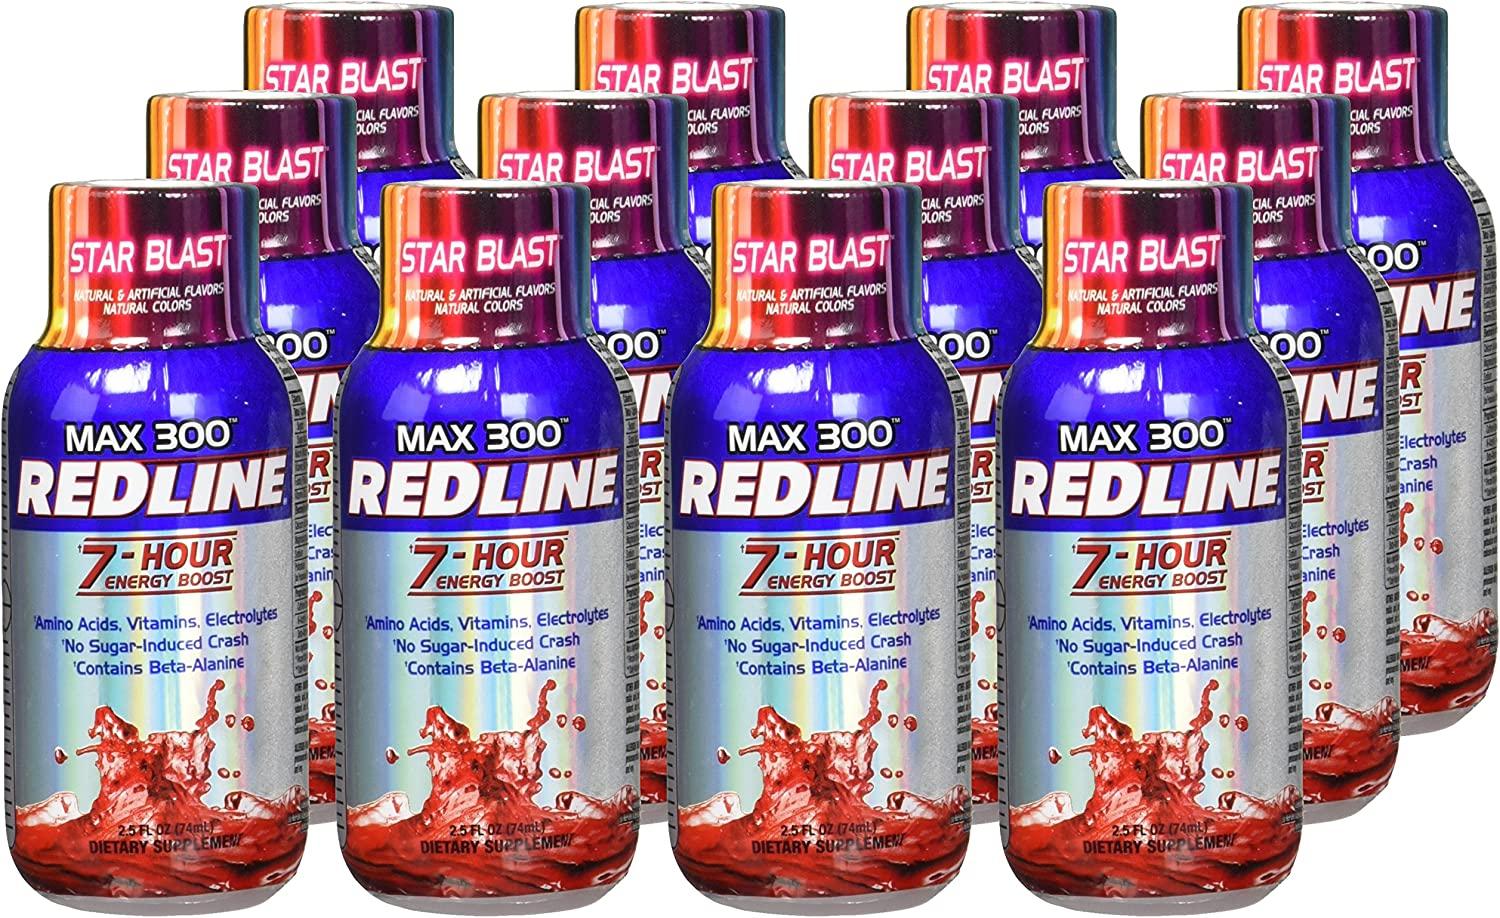 VPX Redline Power Rush 7-Hour Energy Max 300 Supplement, Star